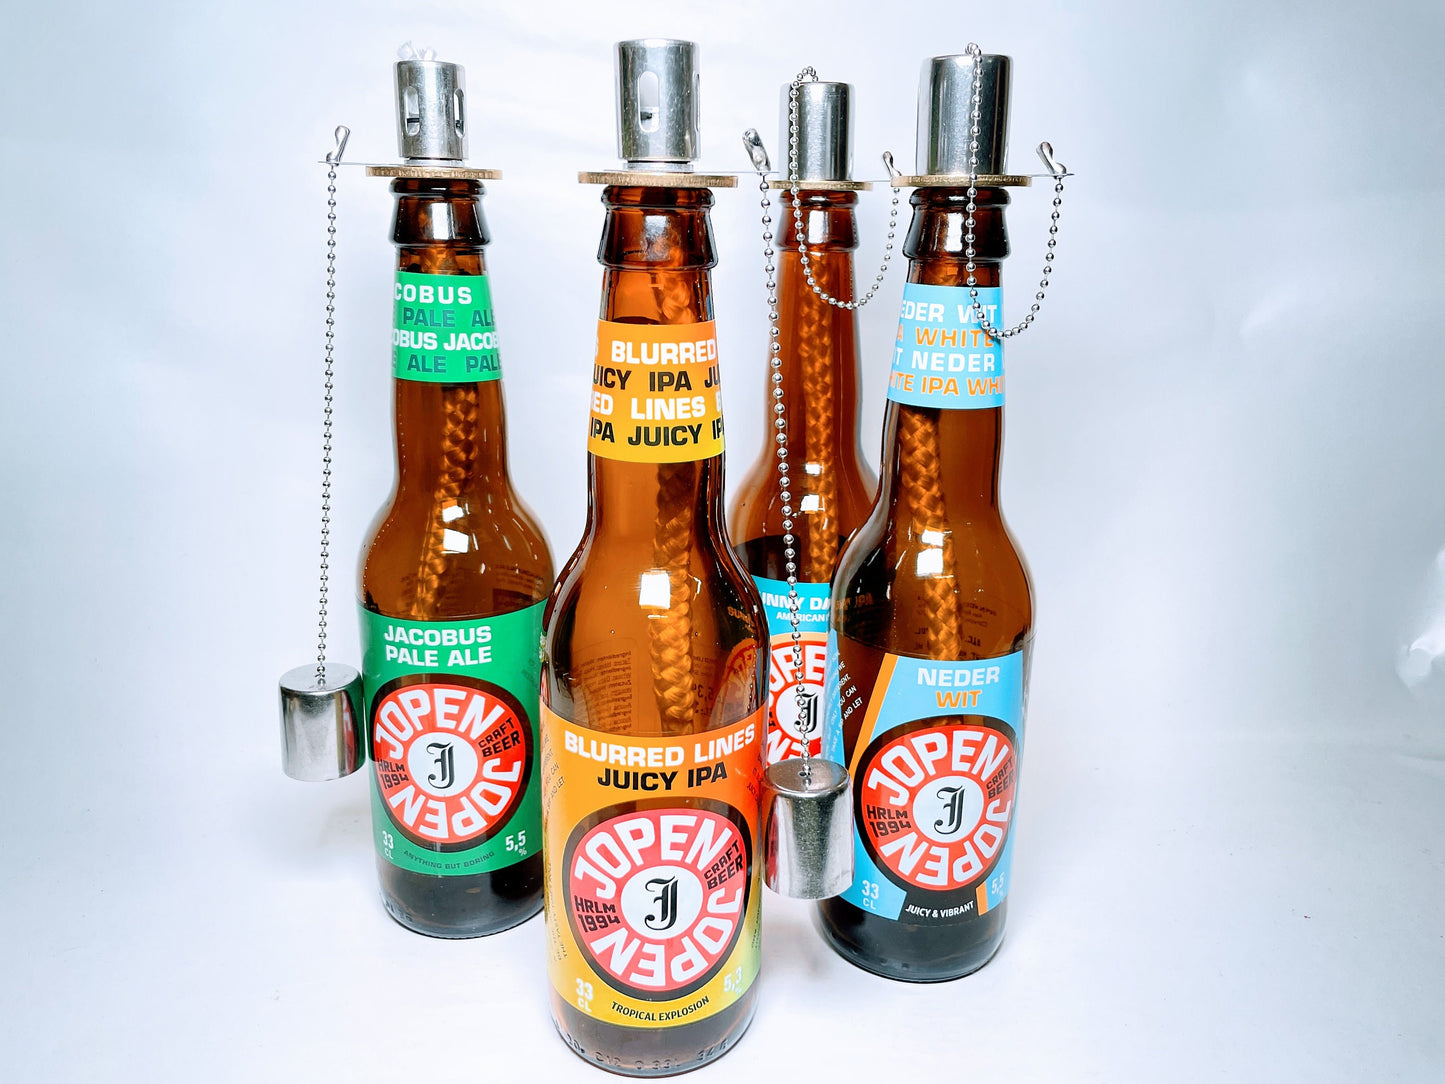 Öllampe aus Craft-Bier-Flaschen - Handgemacht - Upcycling - Windlicht für Balkon & Garten